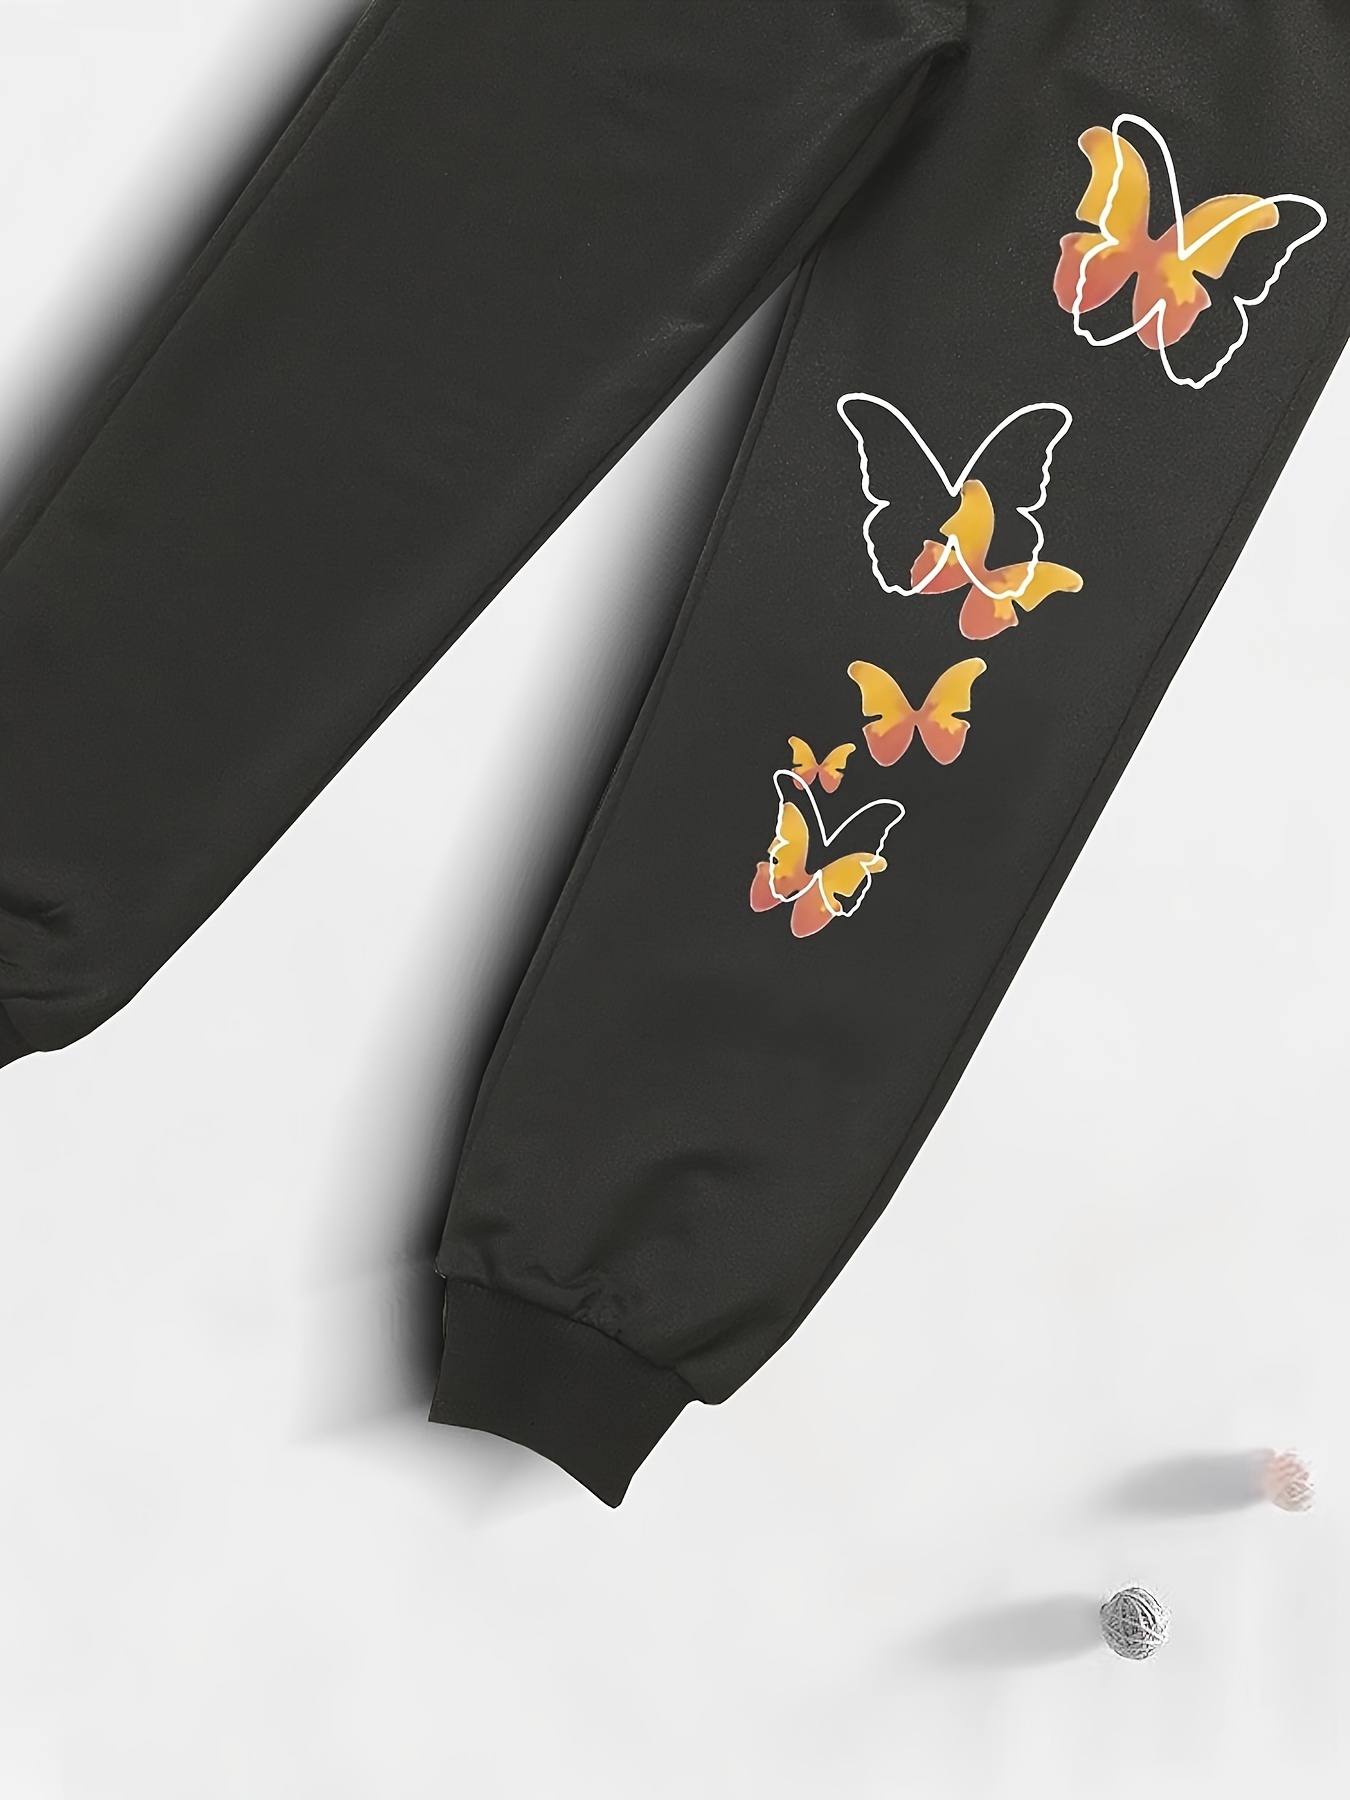 Buy Butterfly Leggings Orange Black Printed Animal Butterflies